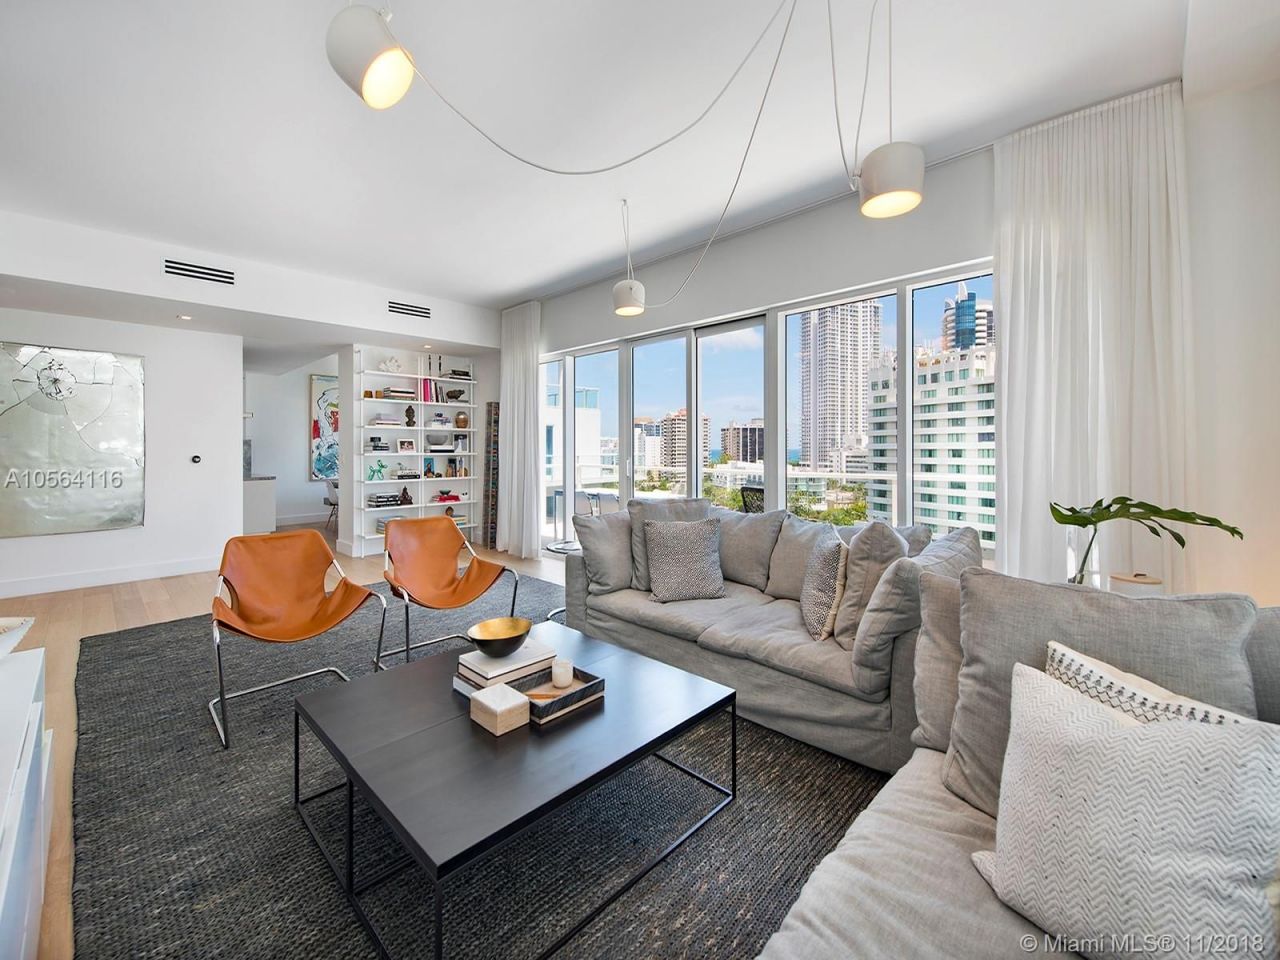 Apartment in Miami, USA, 220 m2 - Foto 1